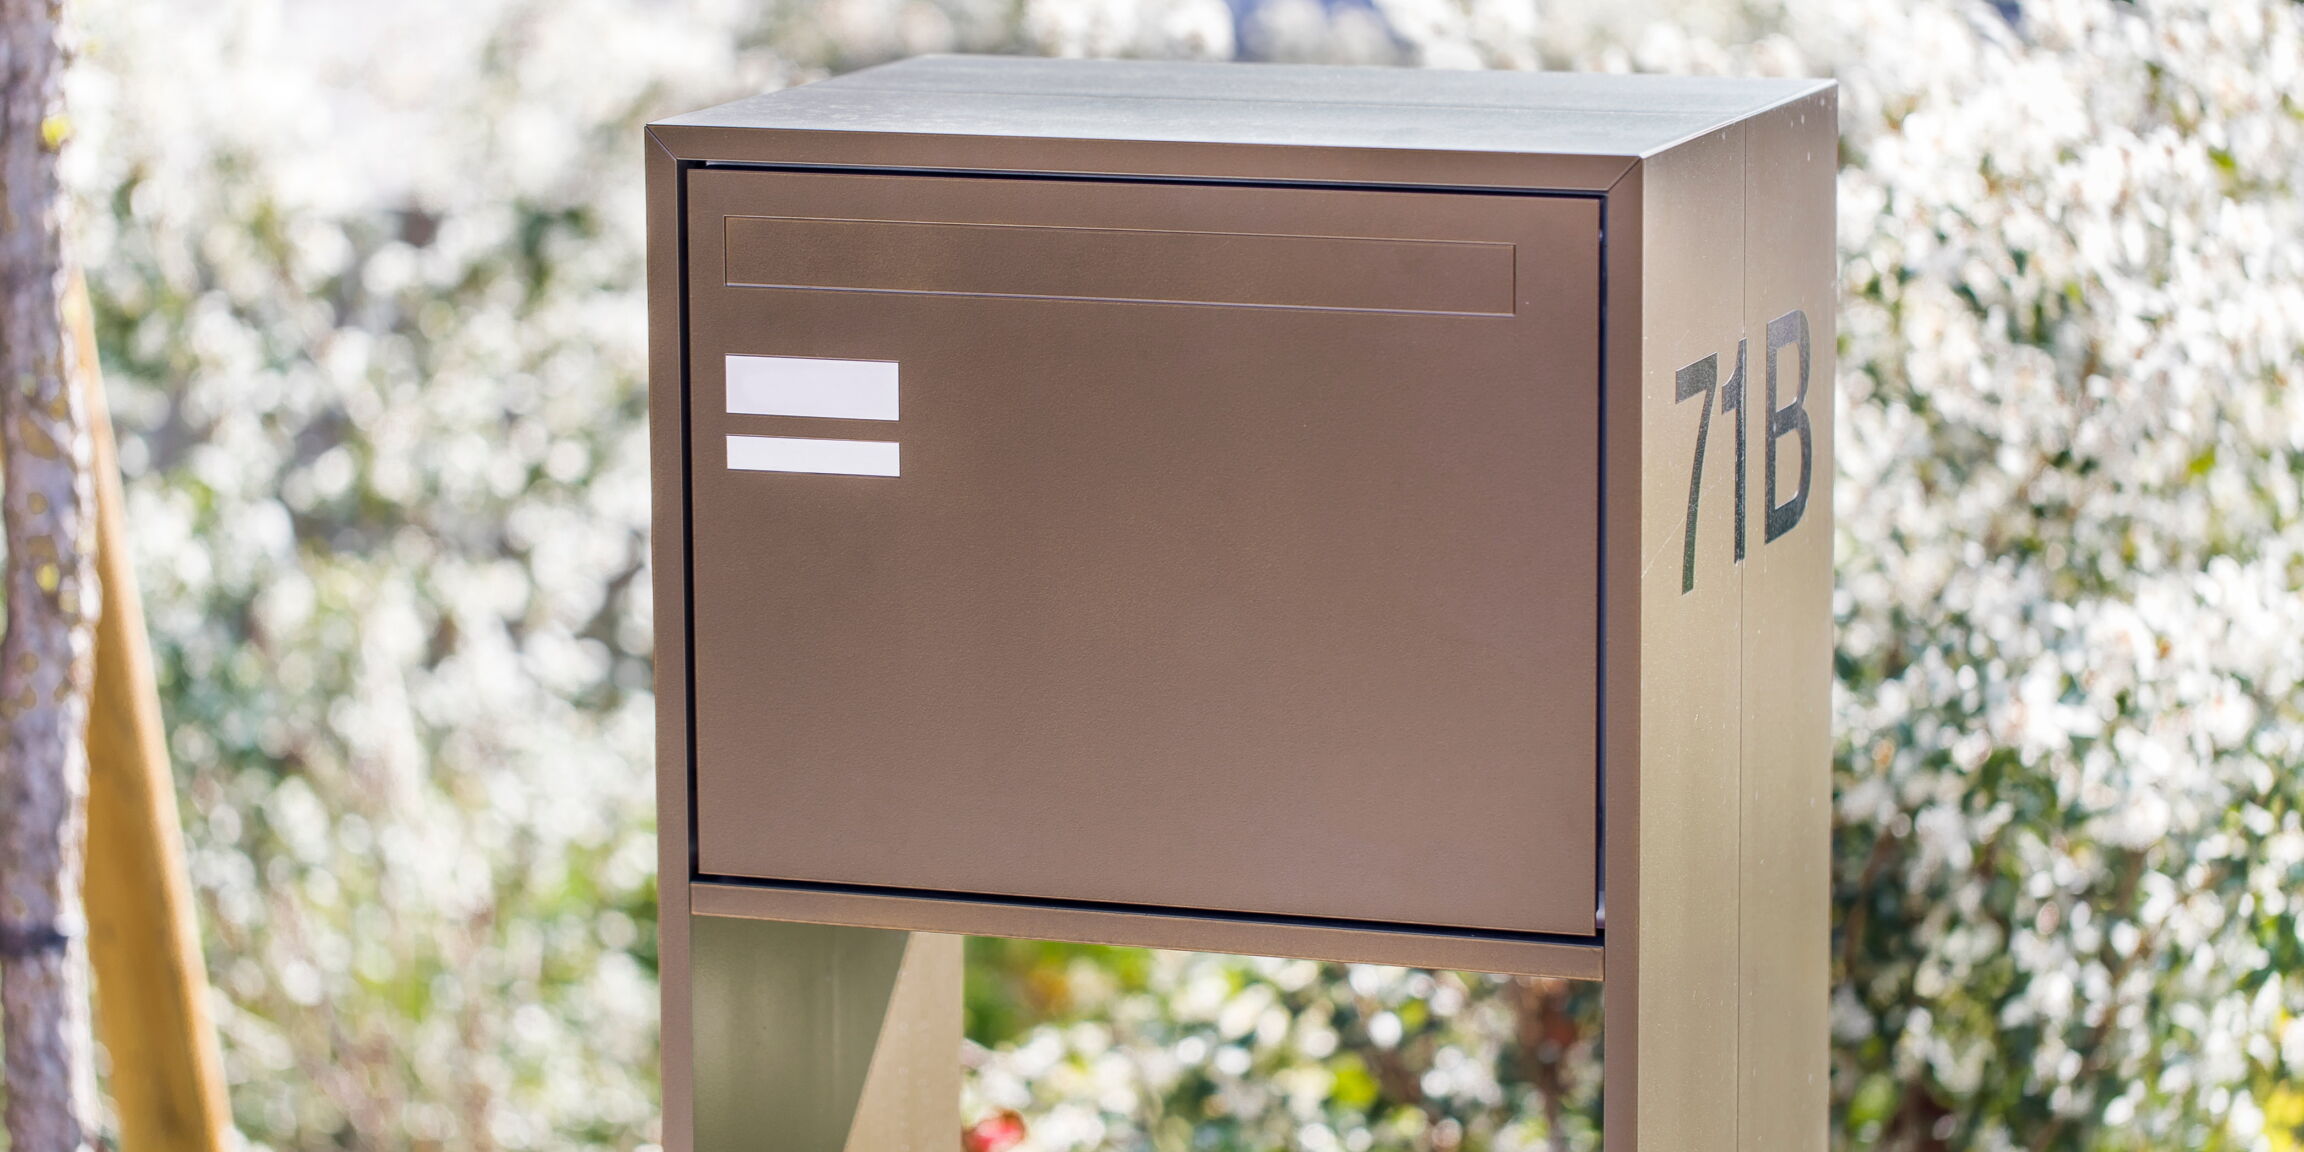 Einfamilienhaus-Briefkasten in Braun mit Hausnummer seitlich an Stütze